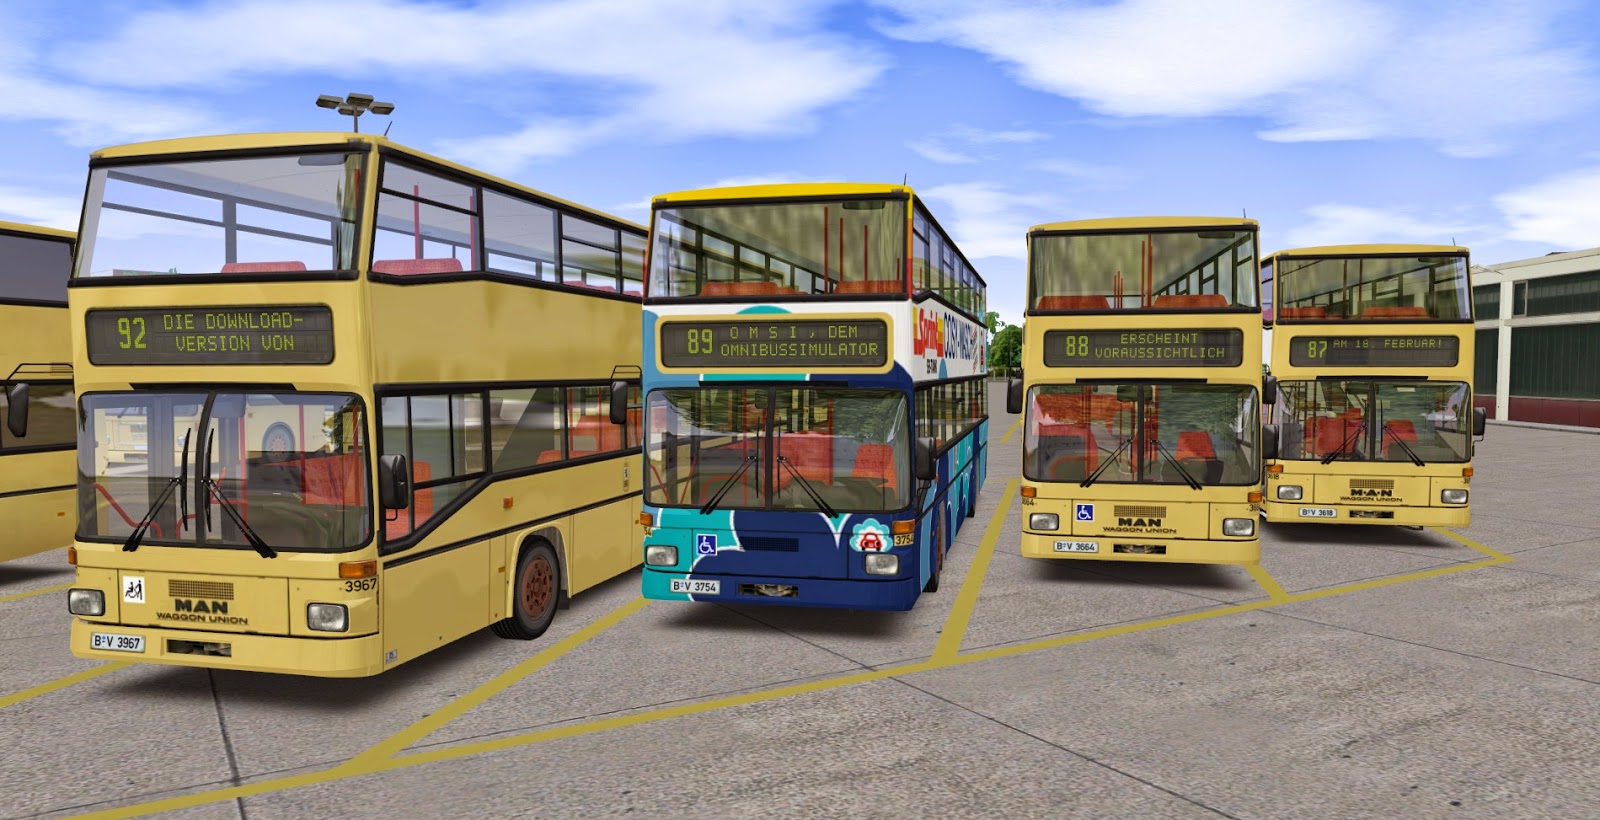 Omsi Bus Simulator Full